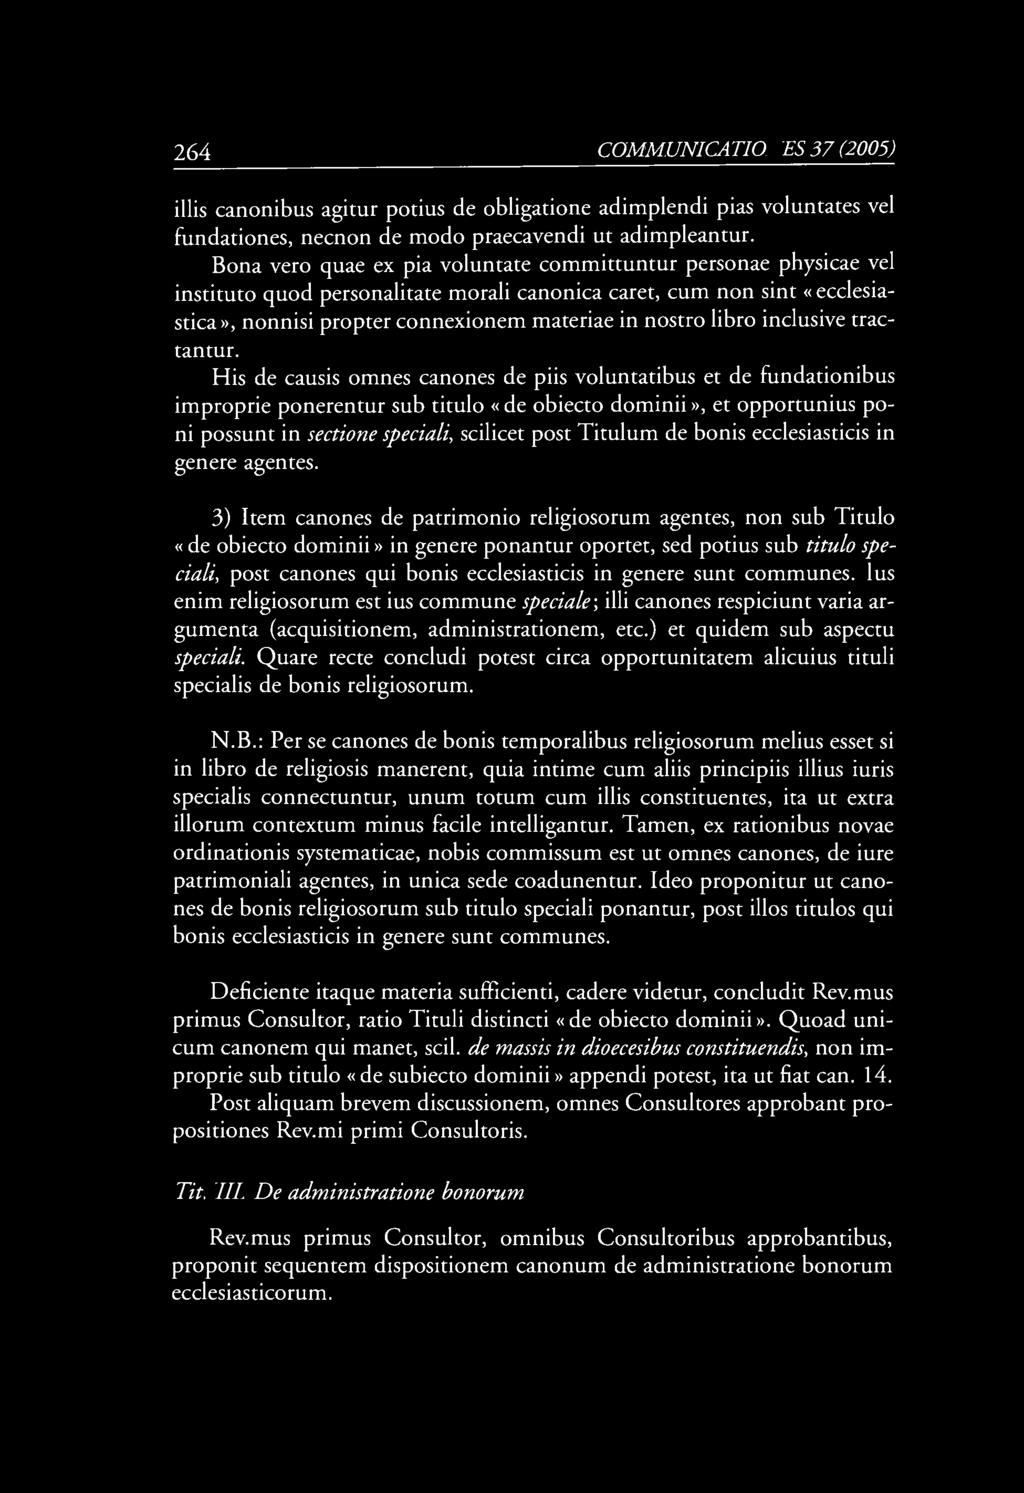 264 COMM UNICA TIONES 37 (2005) illis canonibus agitur potius de obligatione adimplendi pias voluntates vel fundationes, necnon de modo praecavendi ut adimpleantur.